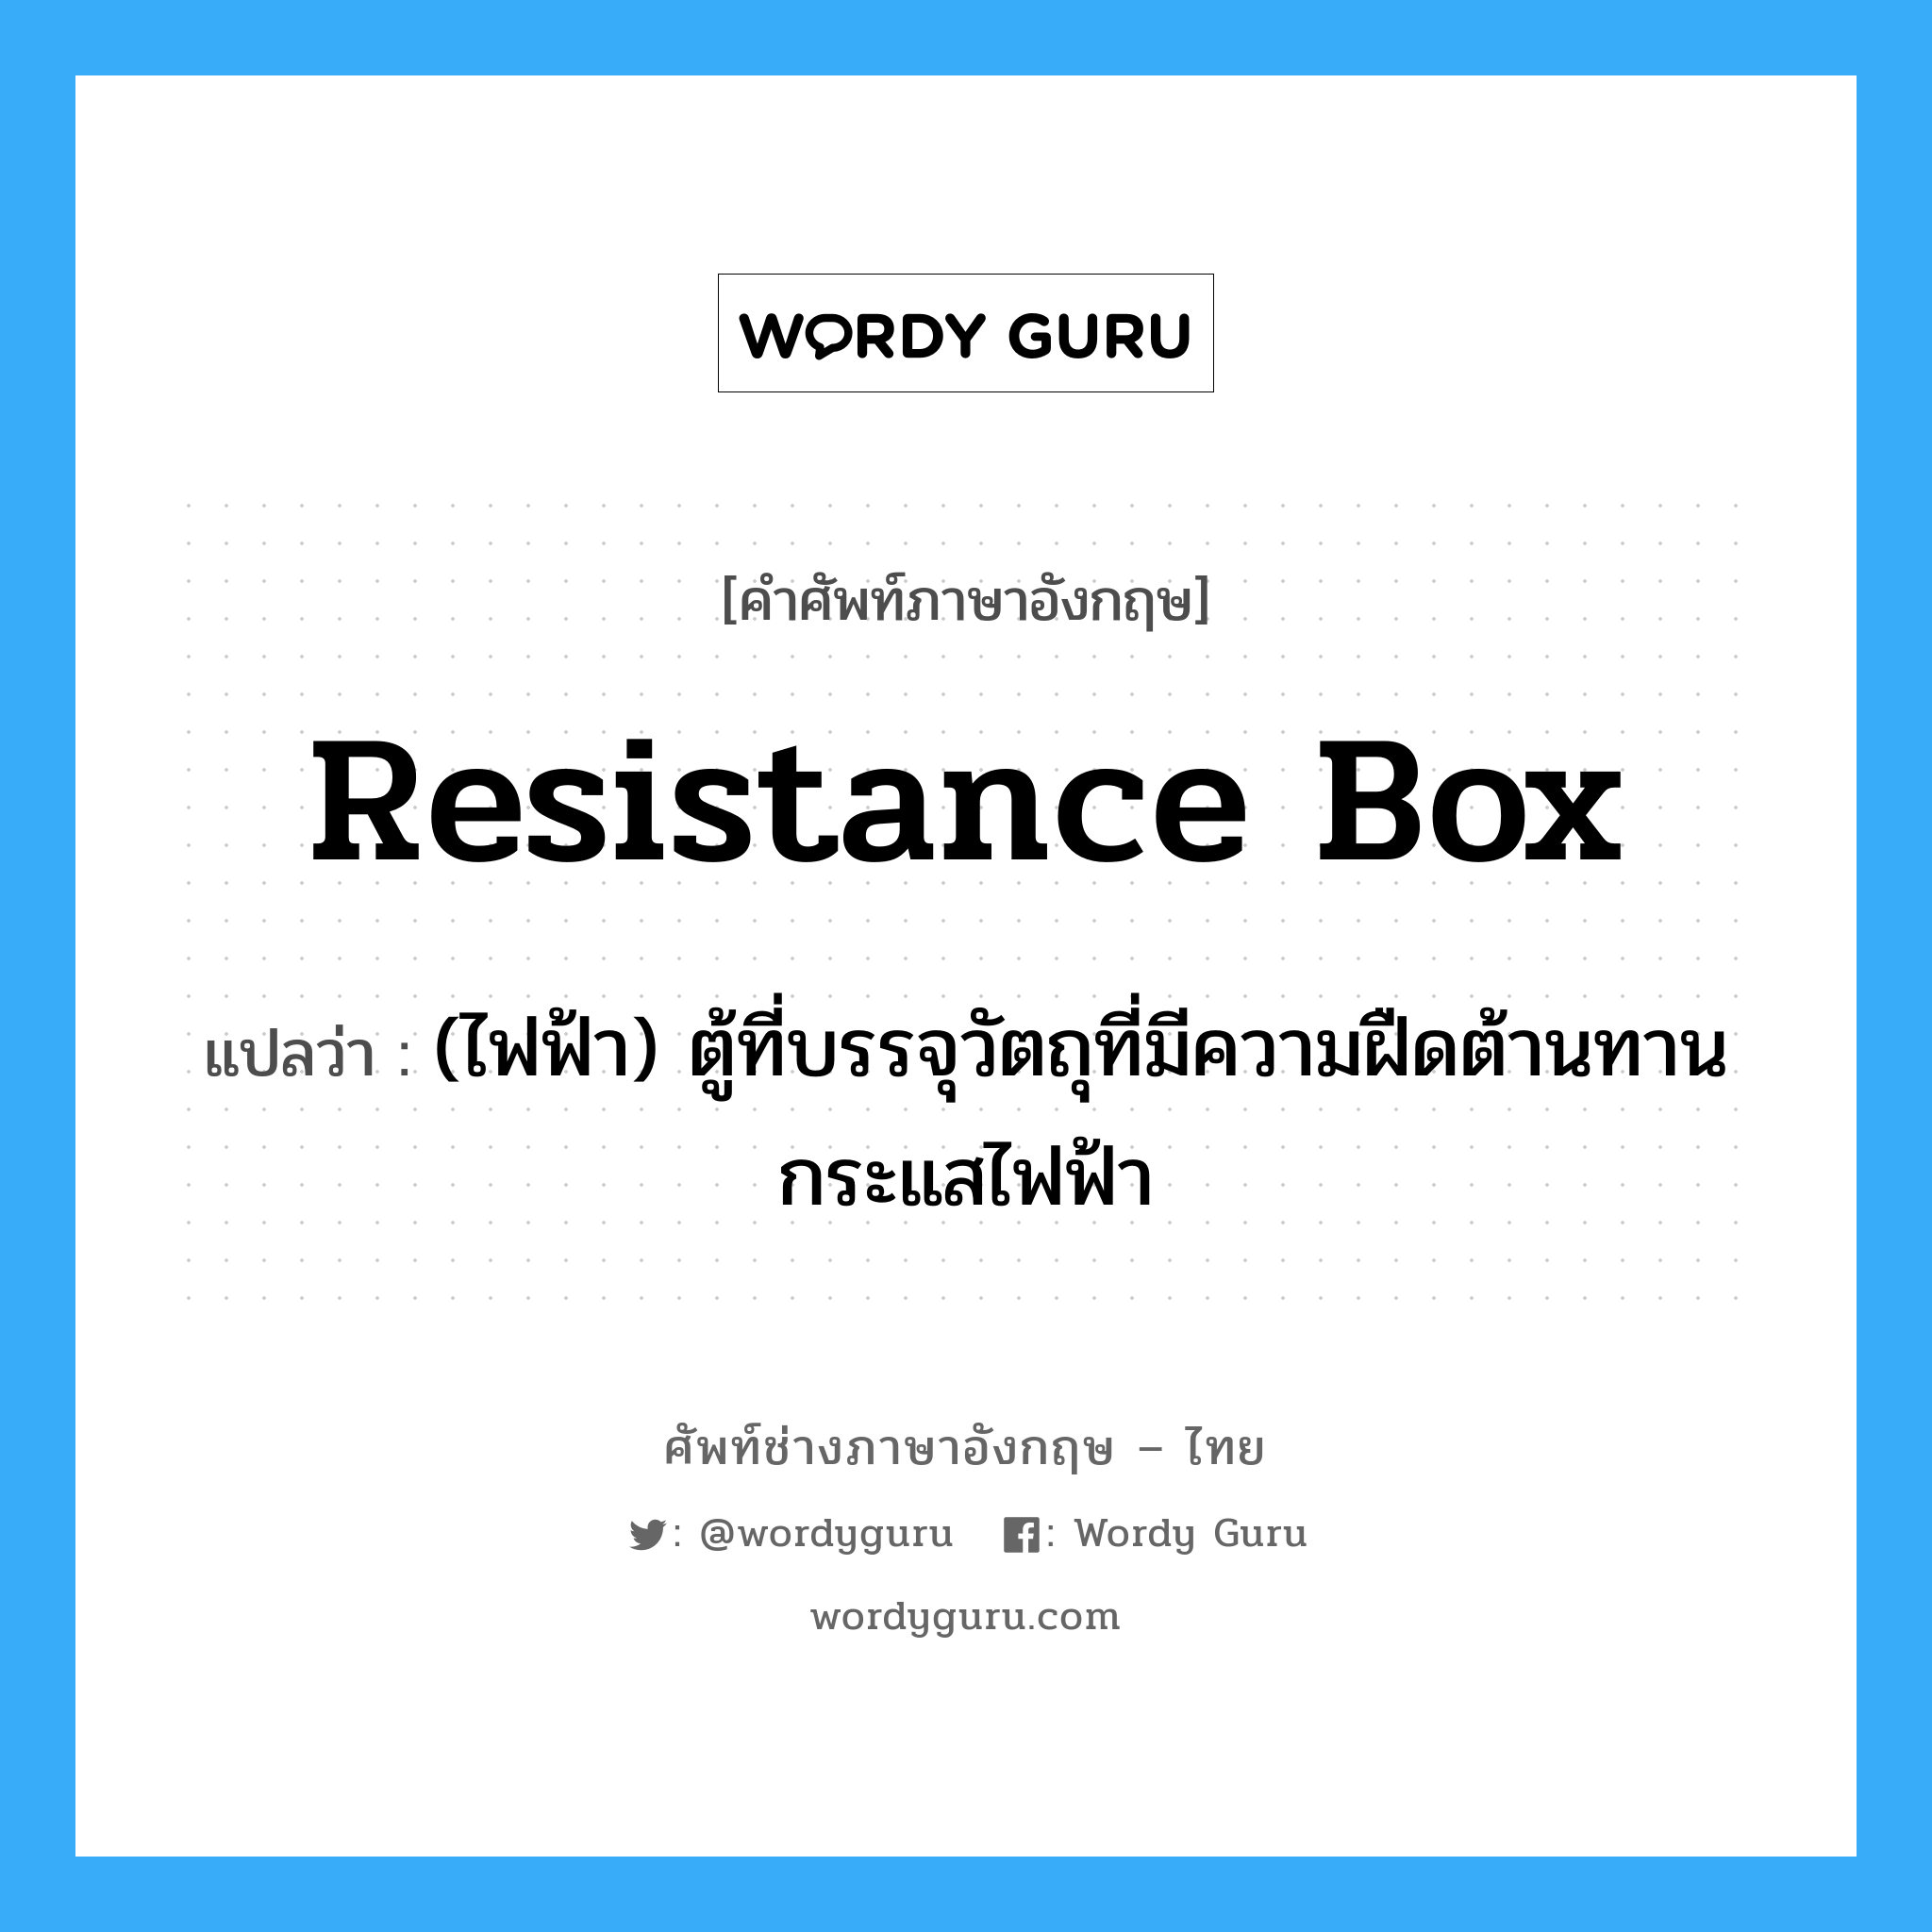 resistance box แปลว่า?, คำศัพท์ช่างภาษาอังกฤษ - ไทย resistance box คำศัพท์ภาษาอังกฤษ resistance box แปลว่า (ไฟฟ้า) ตู้ที่บรรจุวัตถุที่มีความฝืดต้านทานกระแสไฟฟ้า